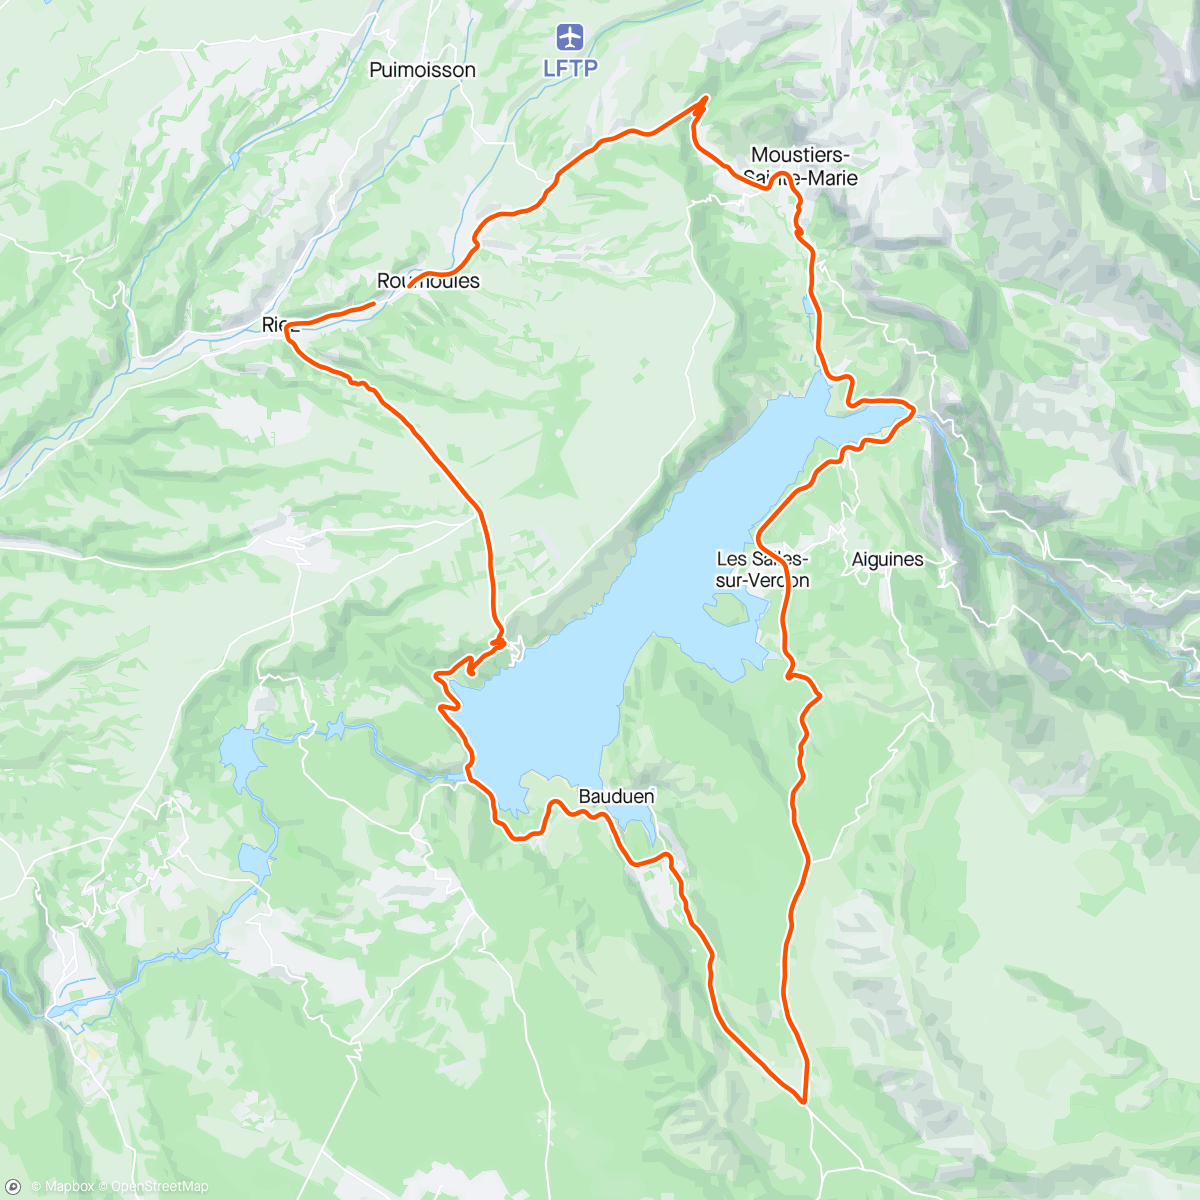 「Tour du lac de sainte Croix」活動的地圖